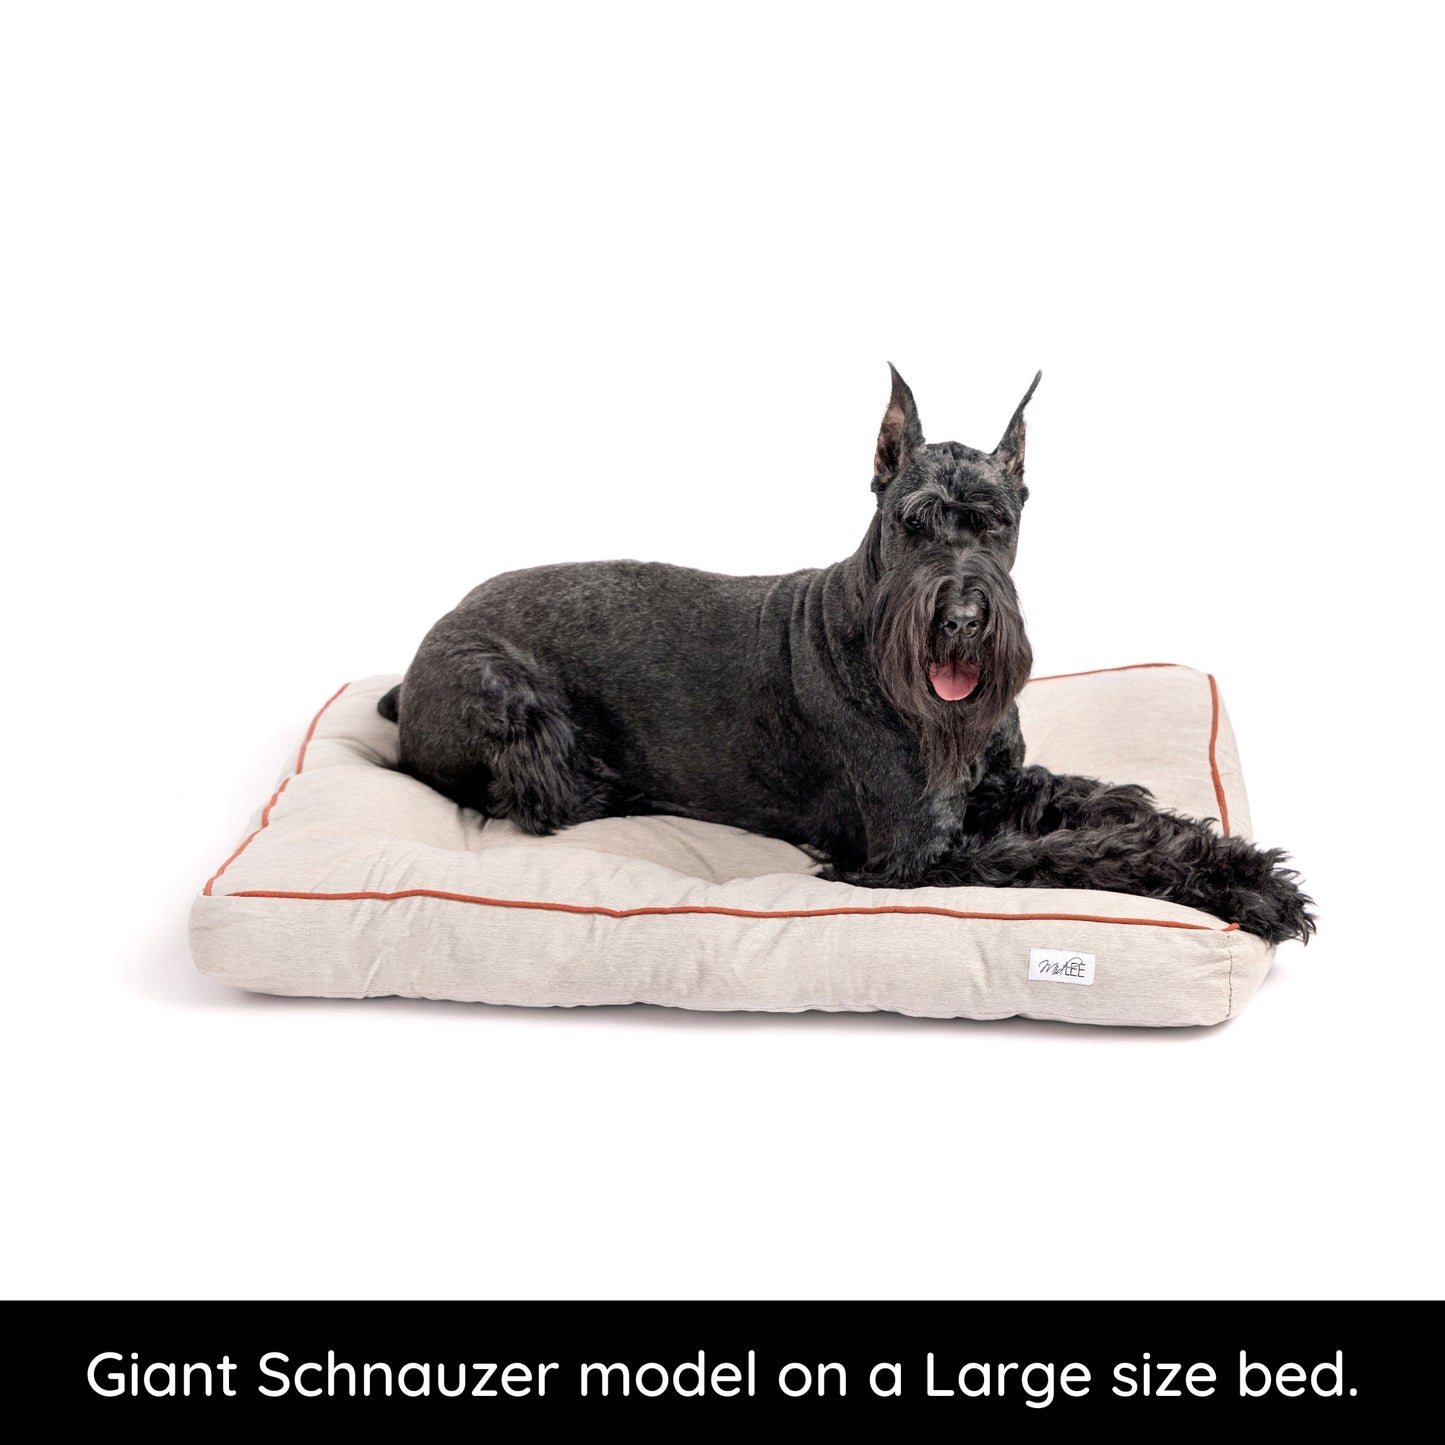 Midlee Grey Tufted Indoor/Outdoor Dog Bed